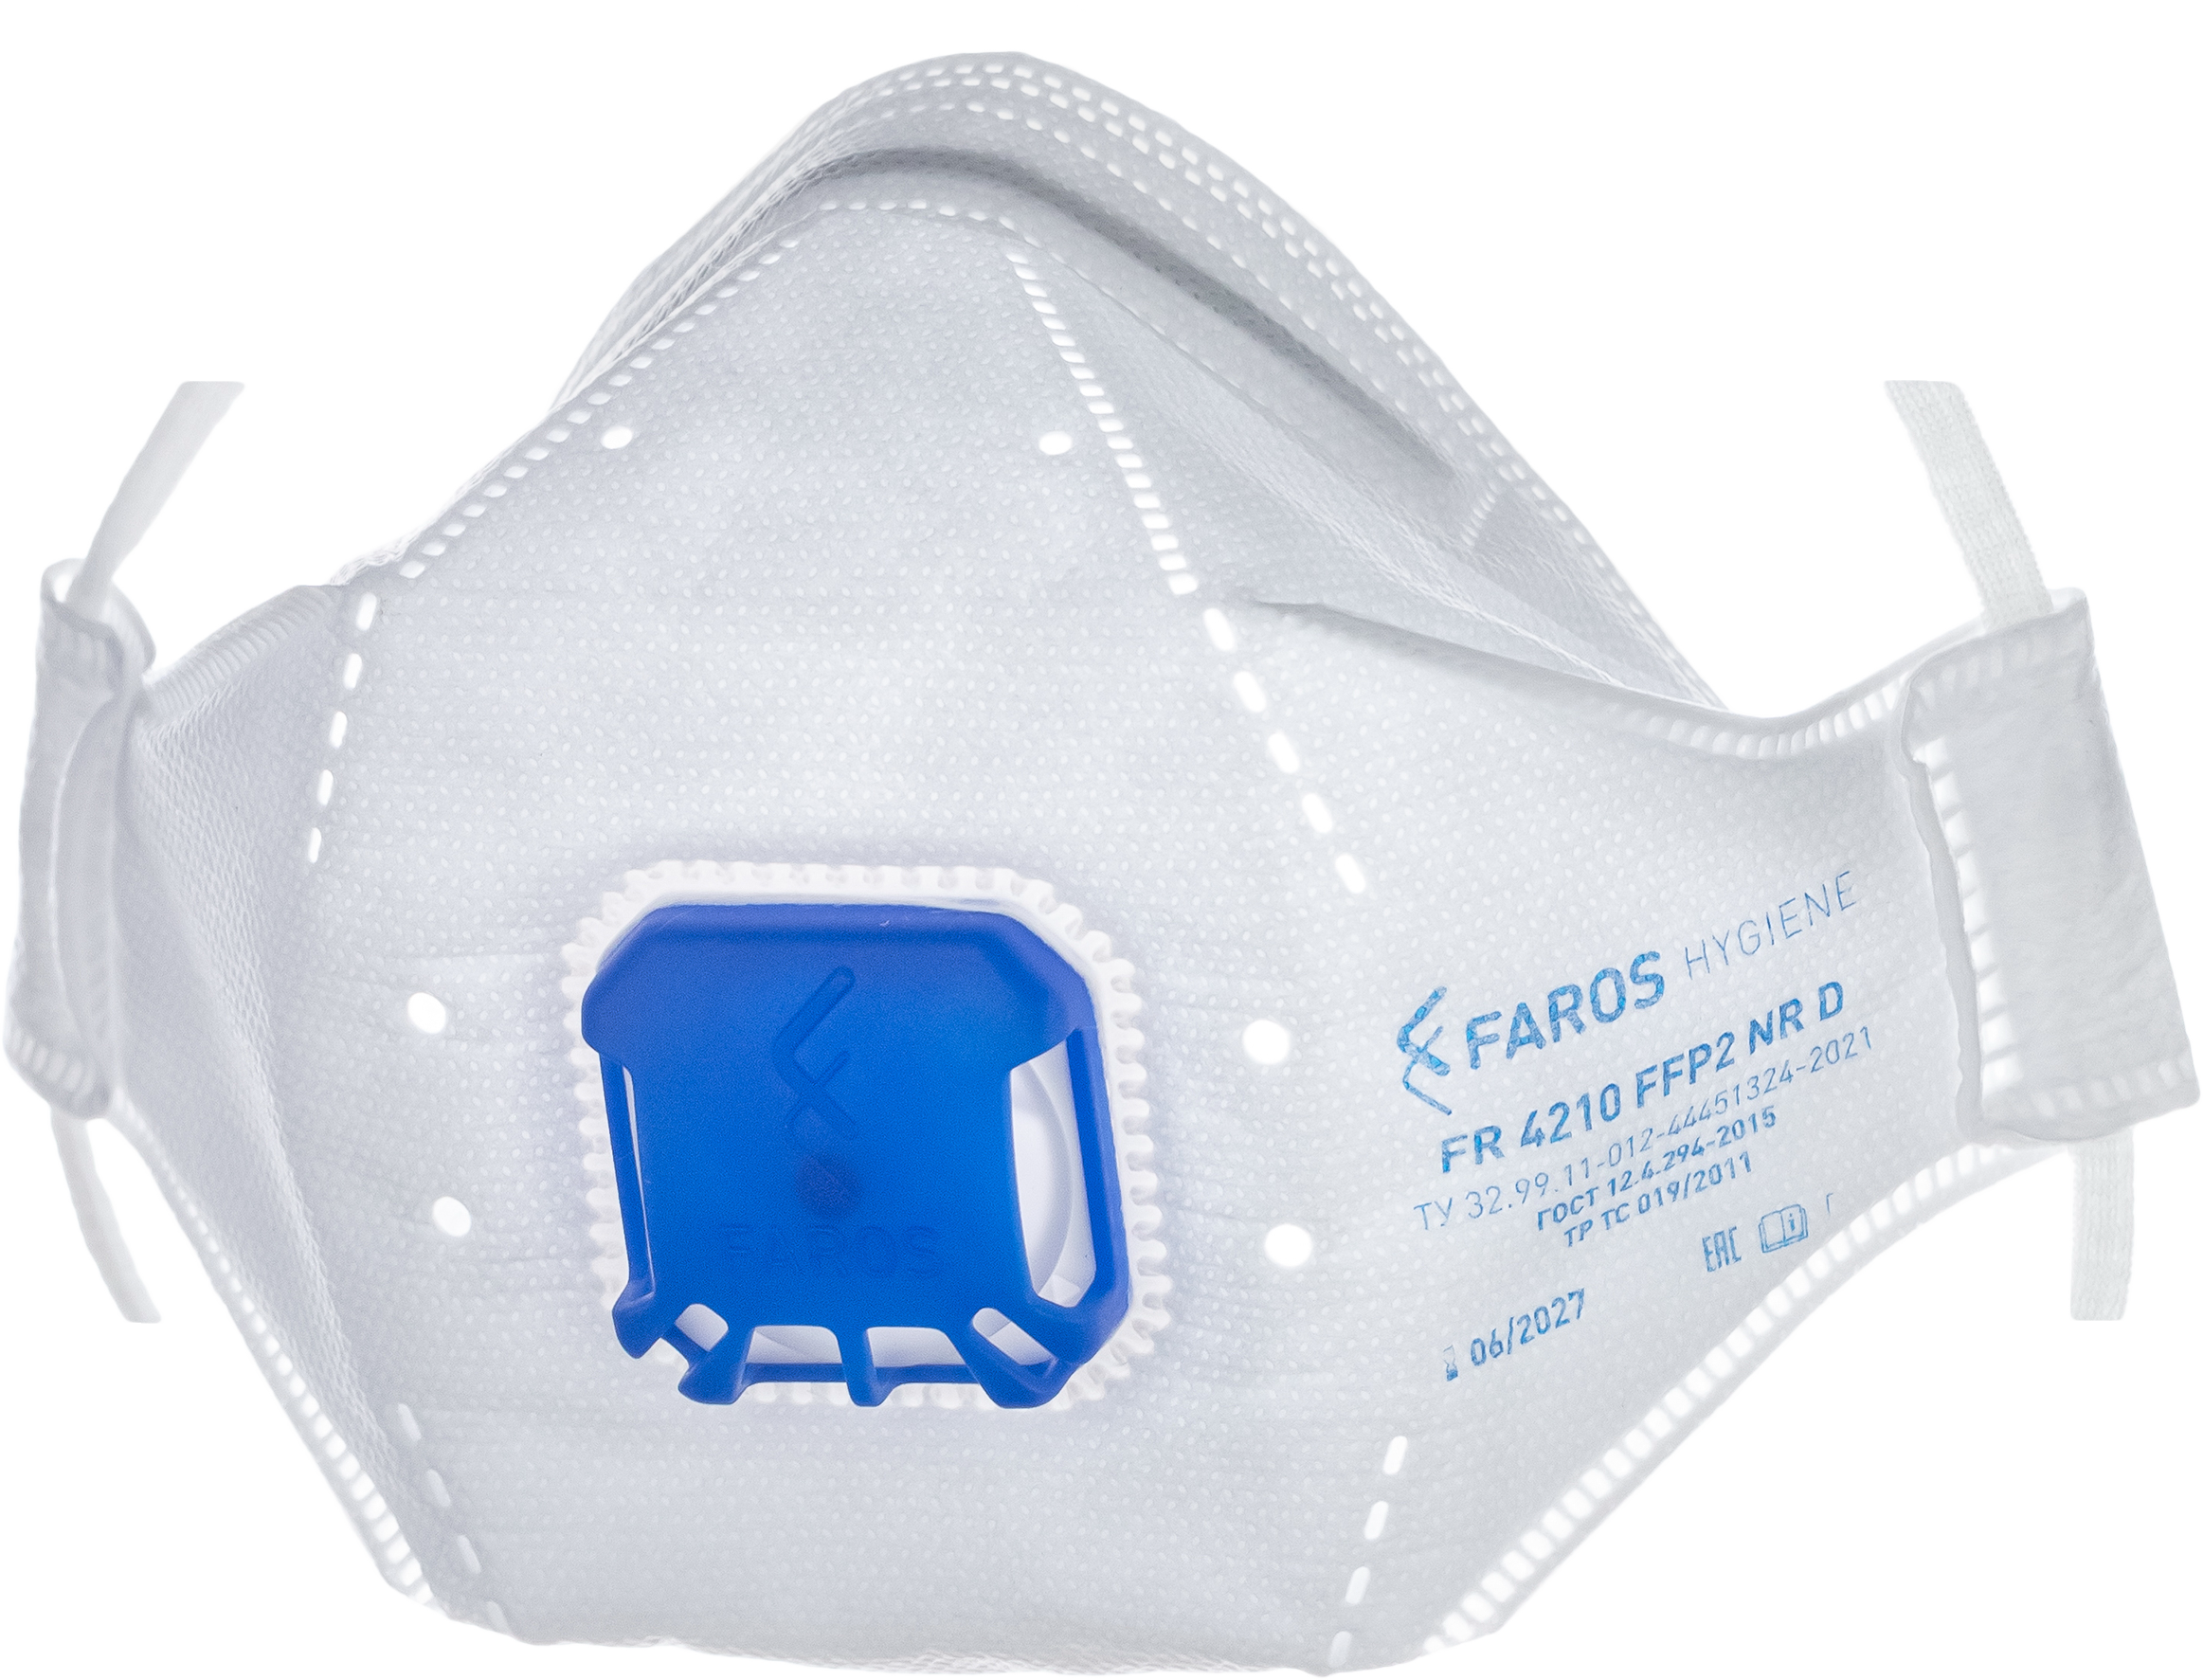 Респиратор FAROS™ FR 4210 PREMIUM FFP2 NR D с защитой от аэрозолей до 12 ПДК, с клапаном